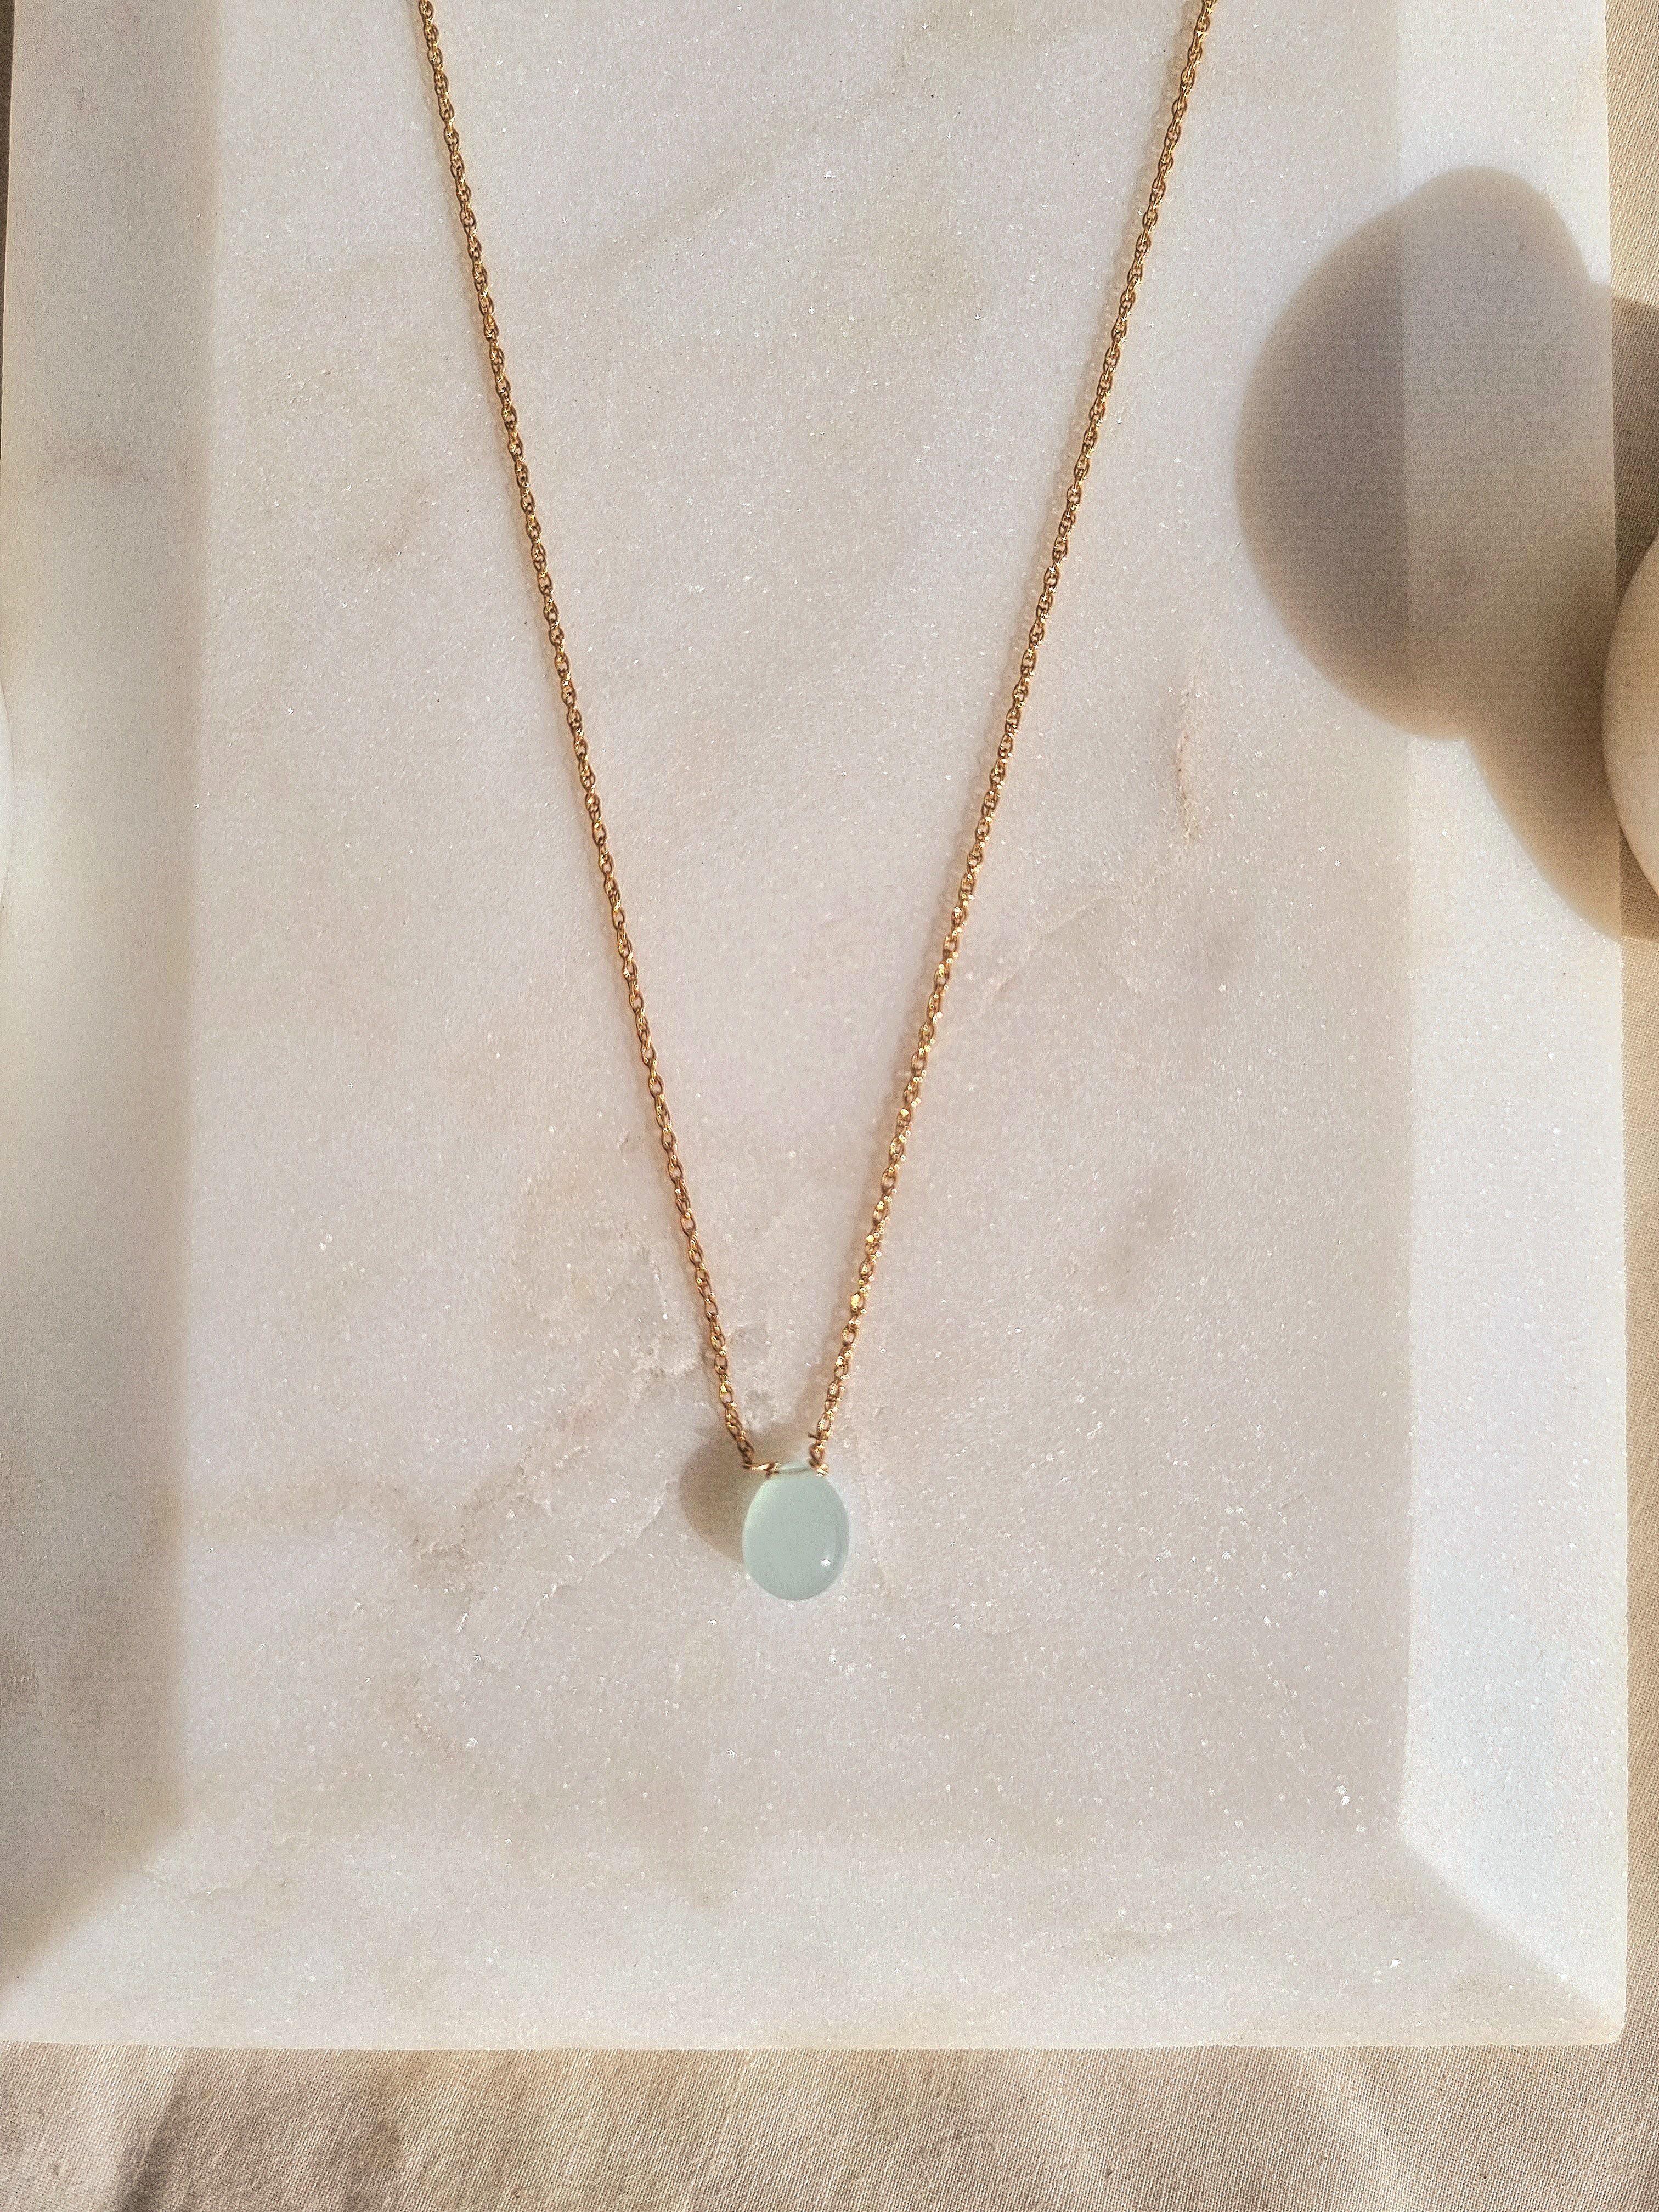 Nest Jewelry Aquamarine Stone Shaker Pendant Necklace